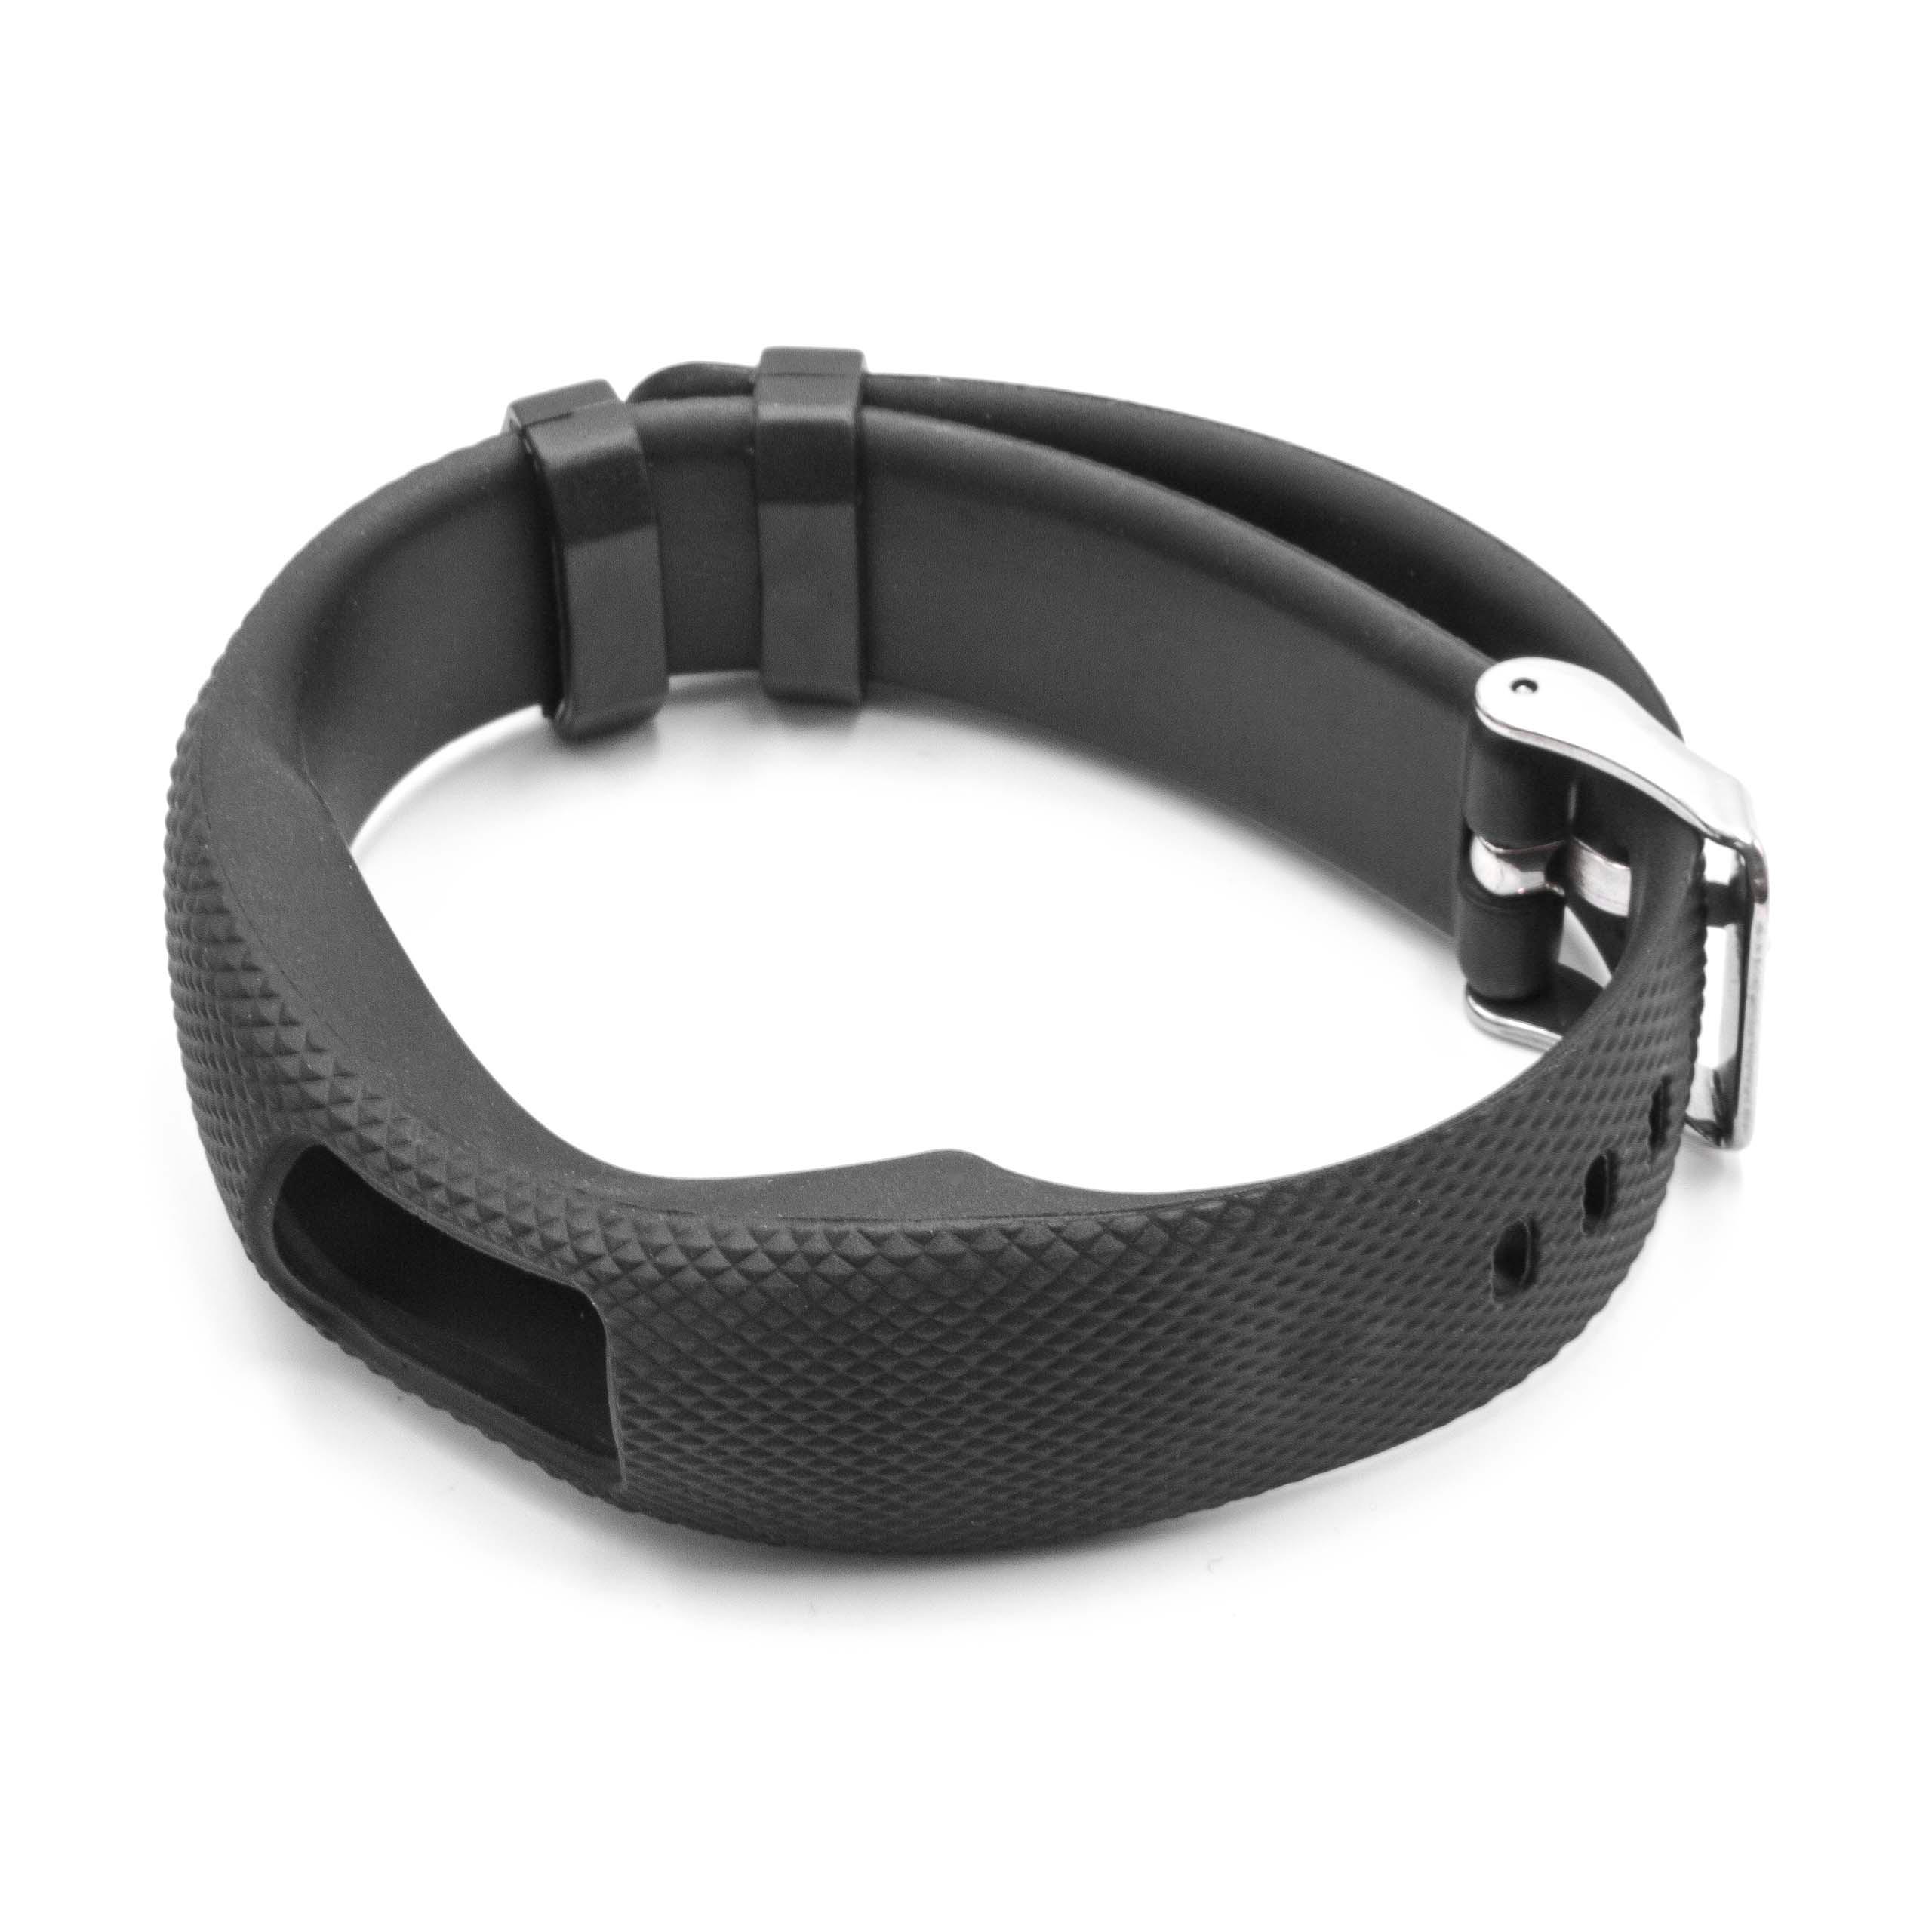 Armband für Garmin Vivofit Smartwatch - 24,5 cm lang, 19,5mm breit, schwarz